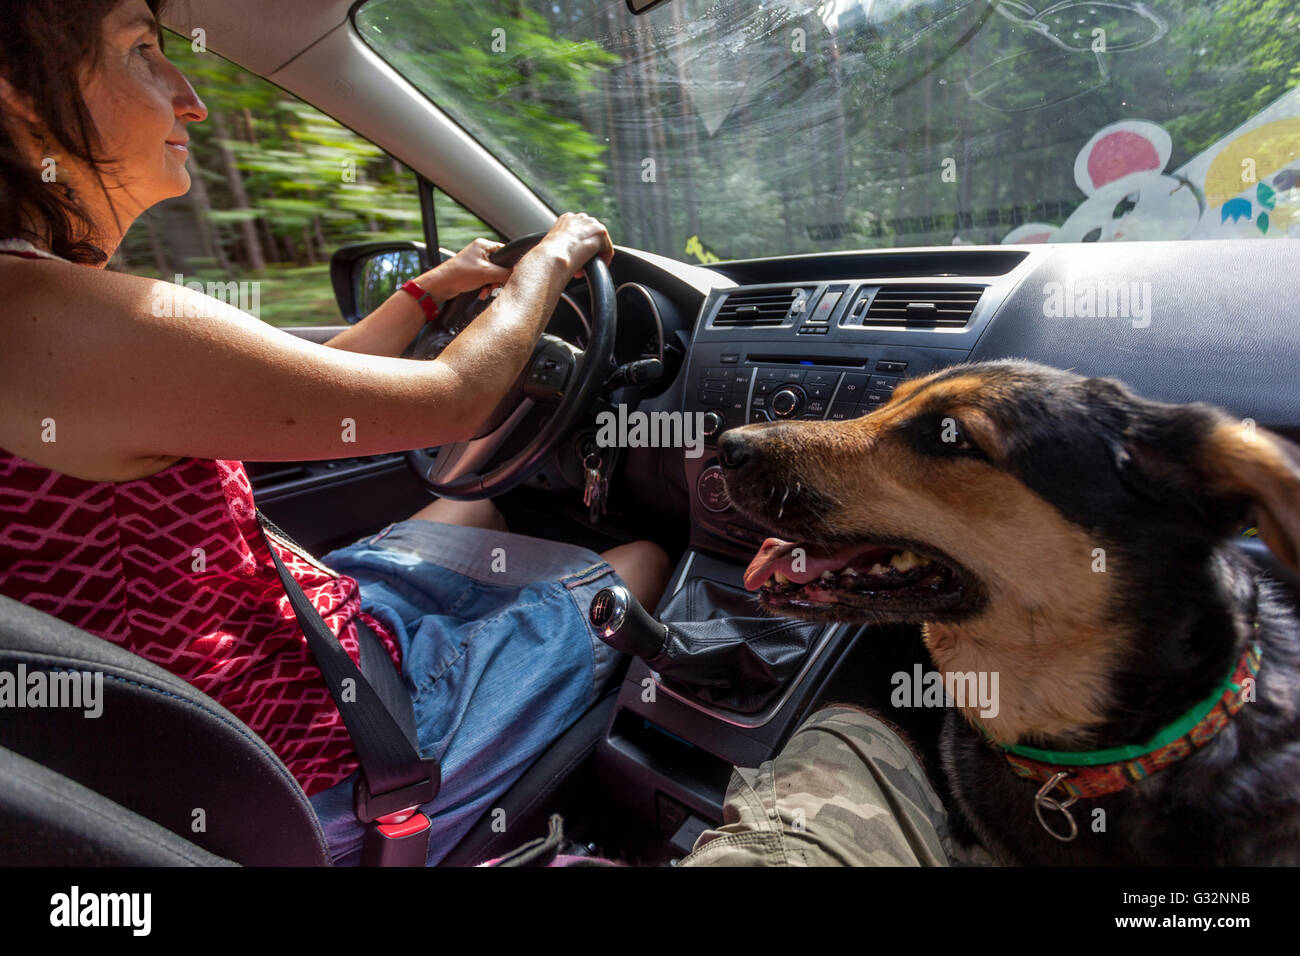 Frau Hundewagen, Frau fahren ein Auto und der Hund auf dem Vordersitz Stockfoto